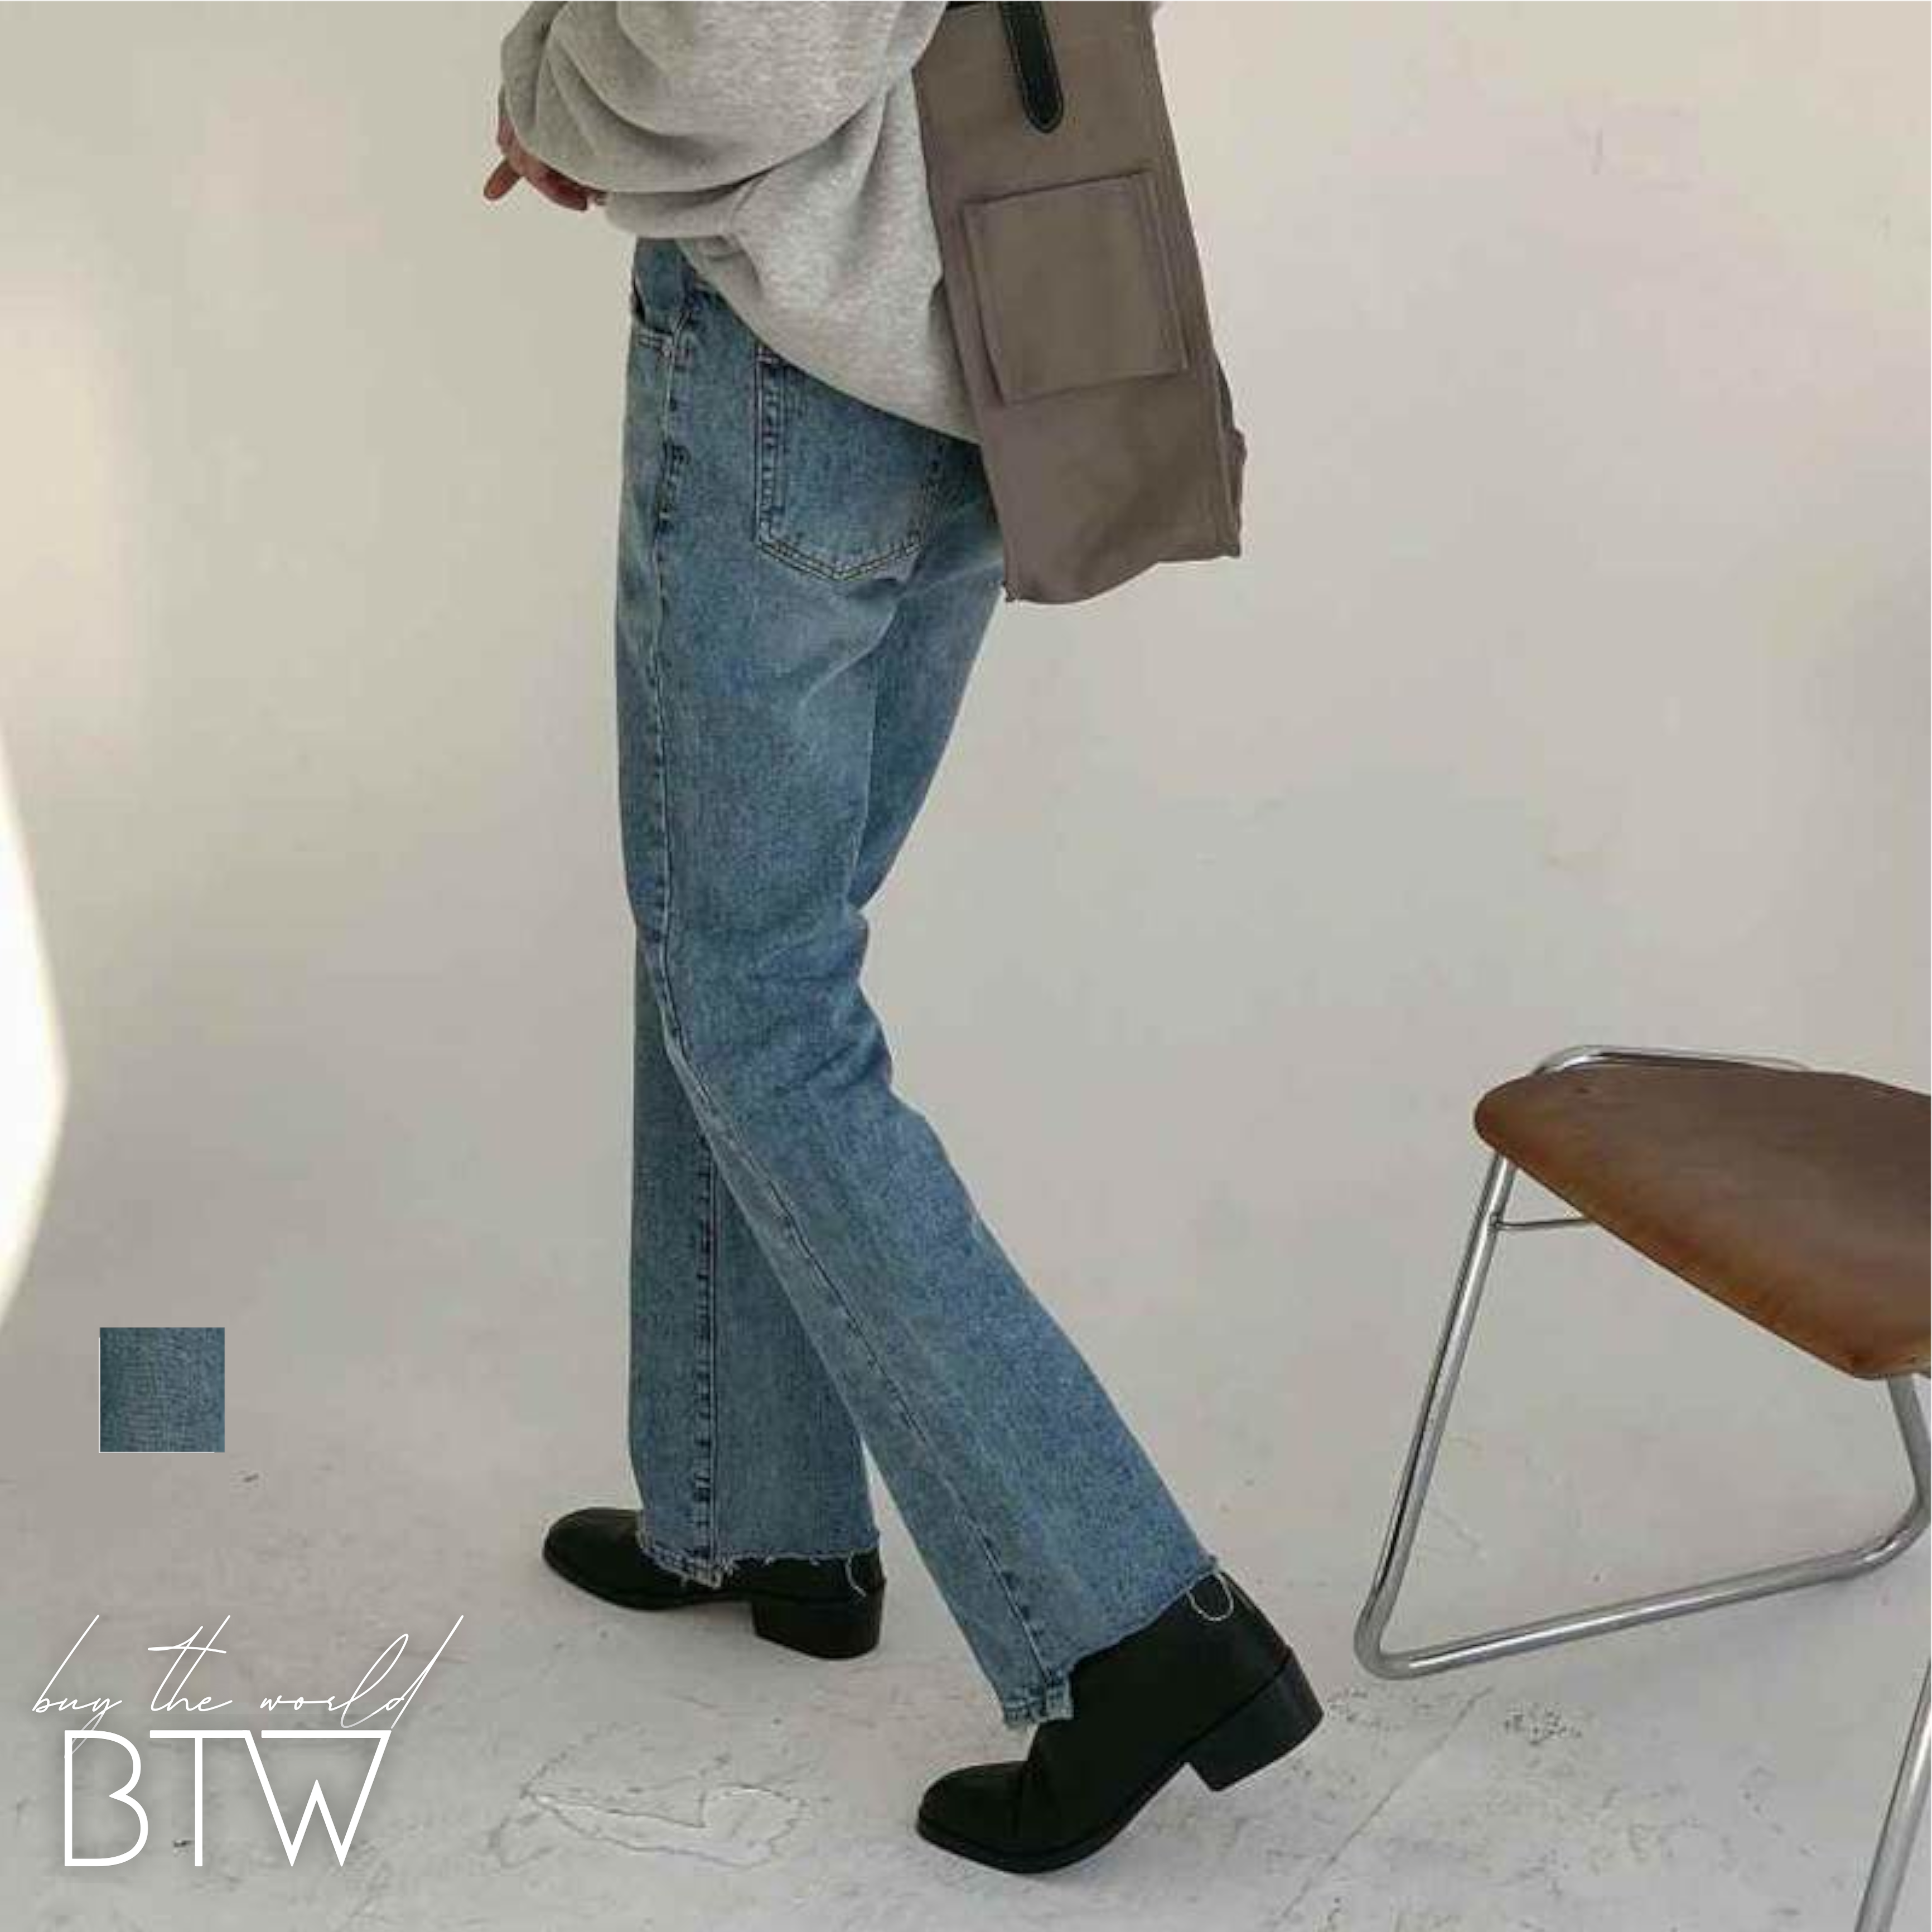 韓国メンズファッション Bw876 メンズ ブーツカット フレア デニム ジーンズ カットオフ シンプル カジュアル 韓国メンズ服 流行プチプラ 韓国メンズファッション新作通販 Buy The World